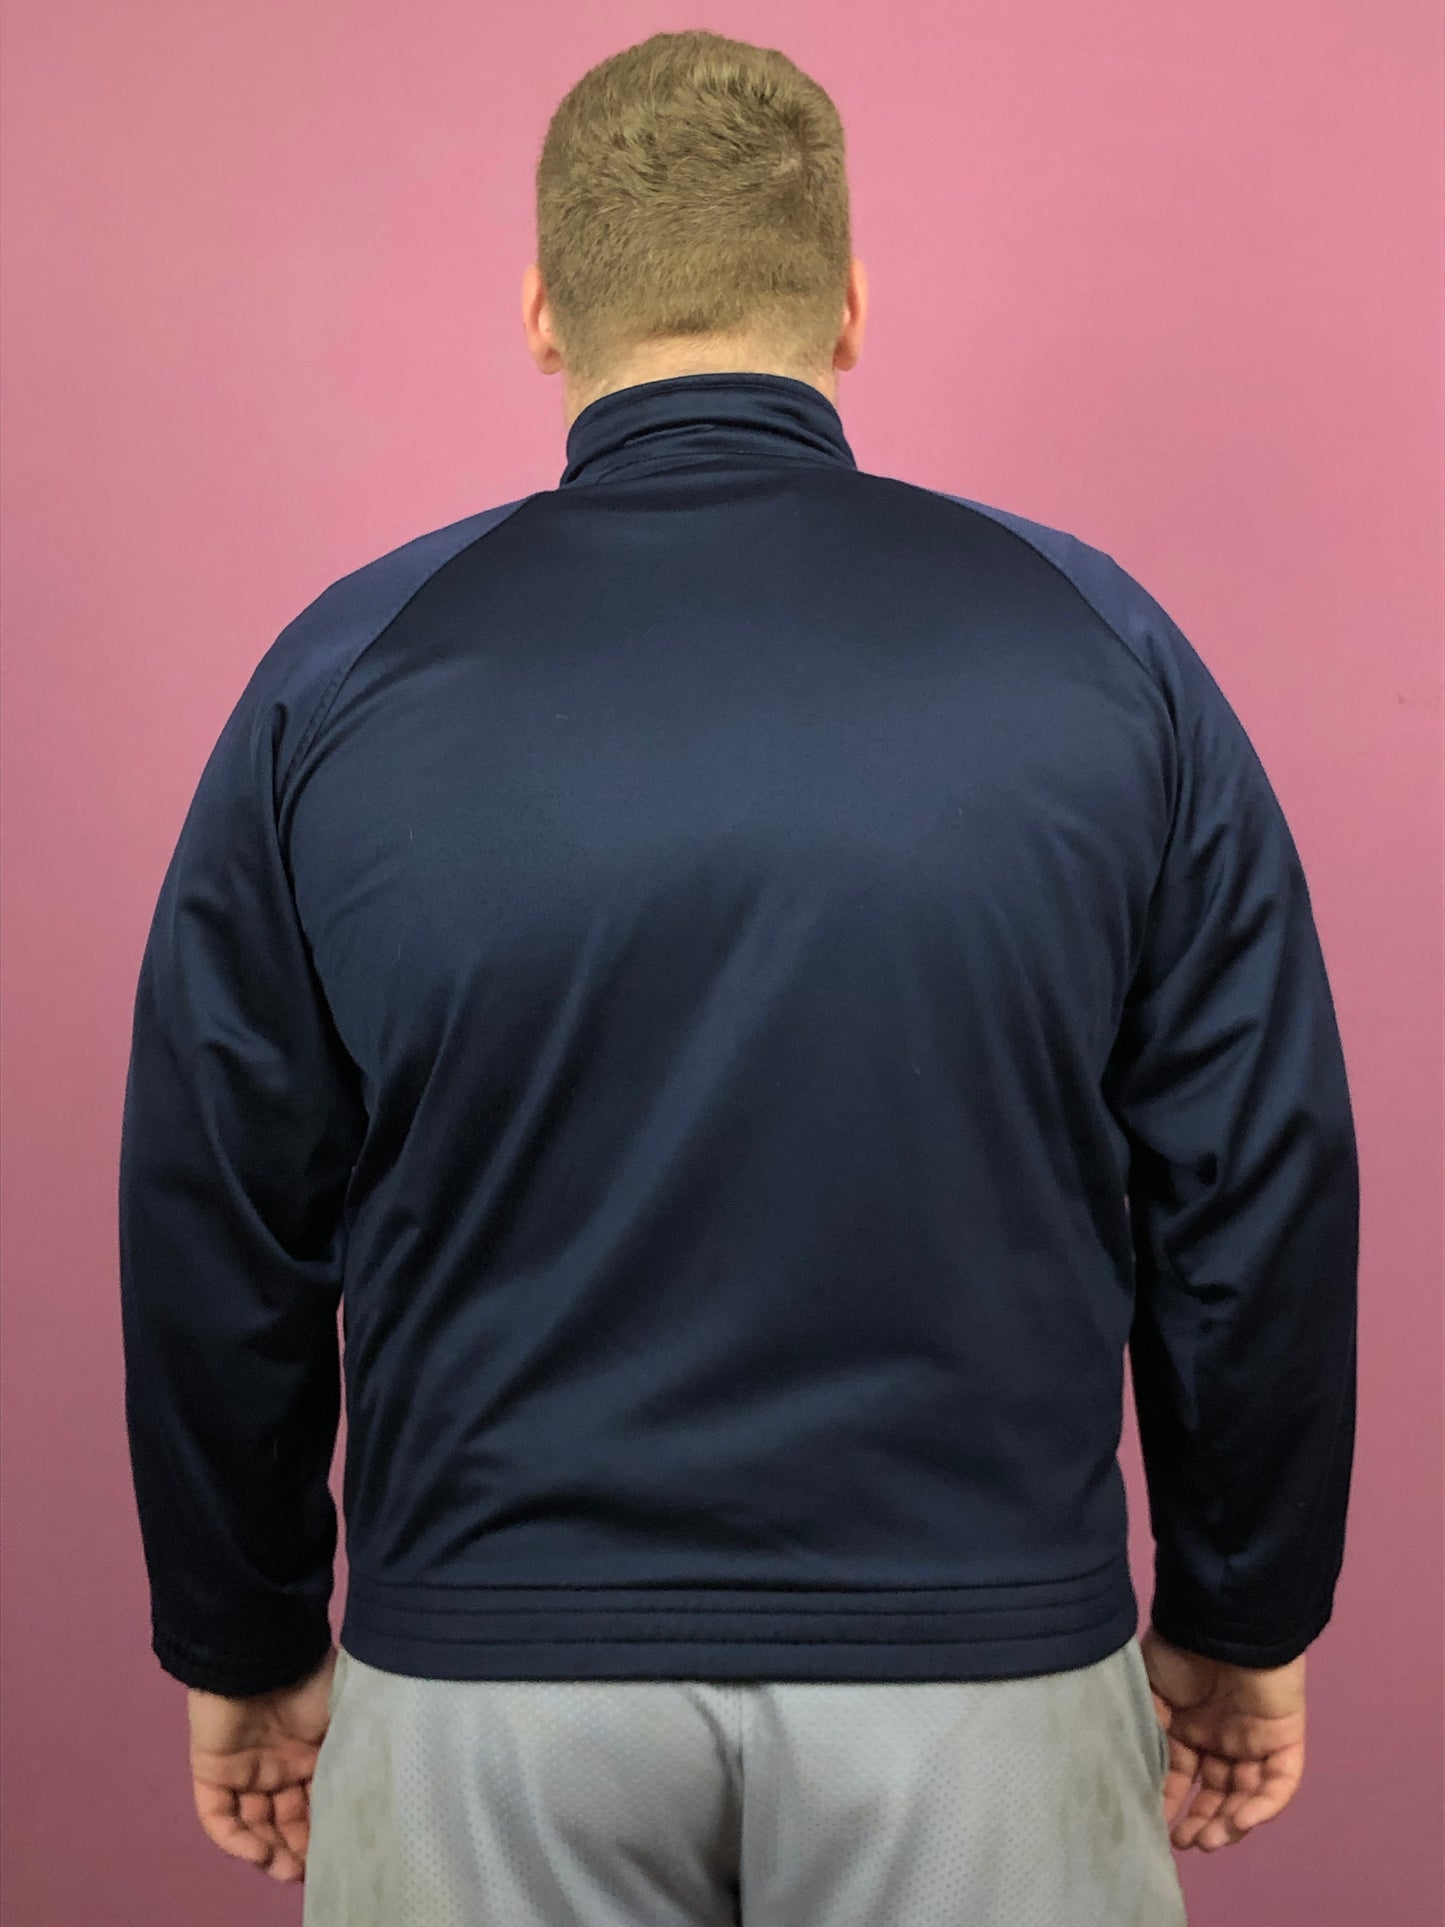 Fila Vintage Men's Track Jacket - Large Navy Blue Polyester